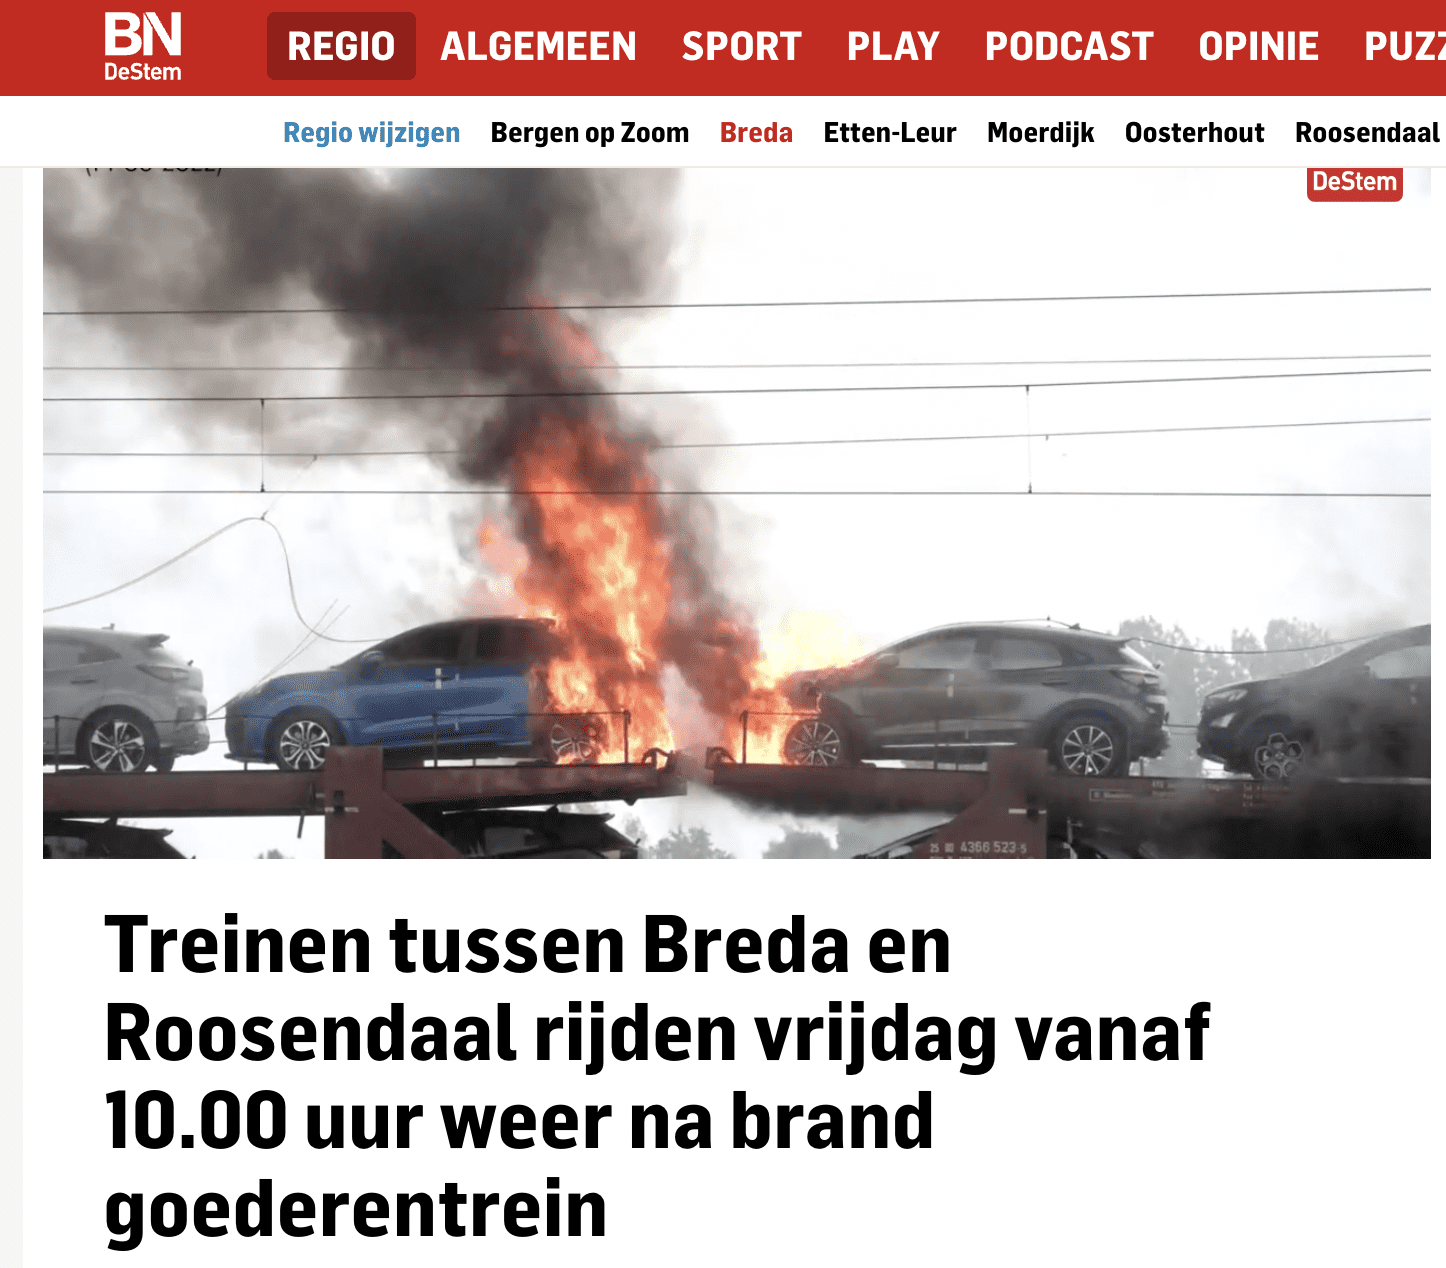 Zrzut ekranu z artykułu opublikowanego w serwisie Bndestem.nl przedstawiającego pożar aut hybrydowych w miejscowości Etten-Leur, który miał miejsce 14 września 2022 roku